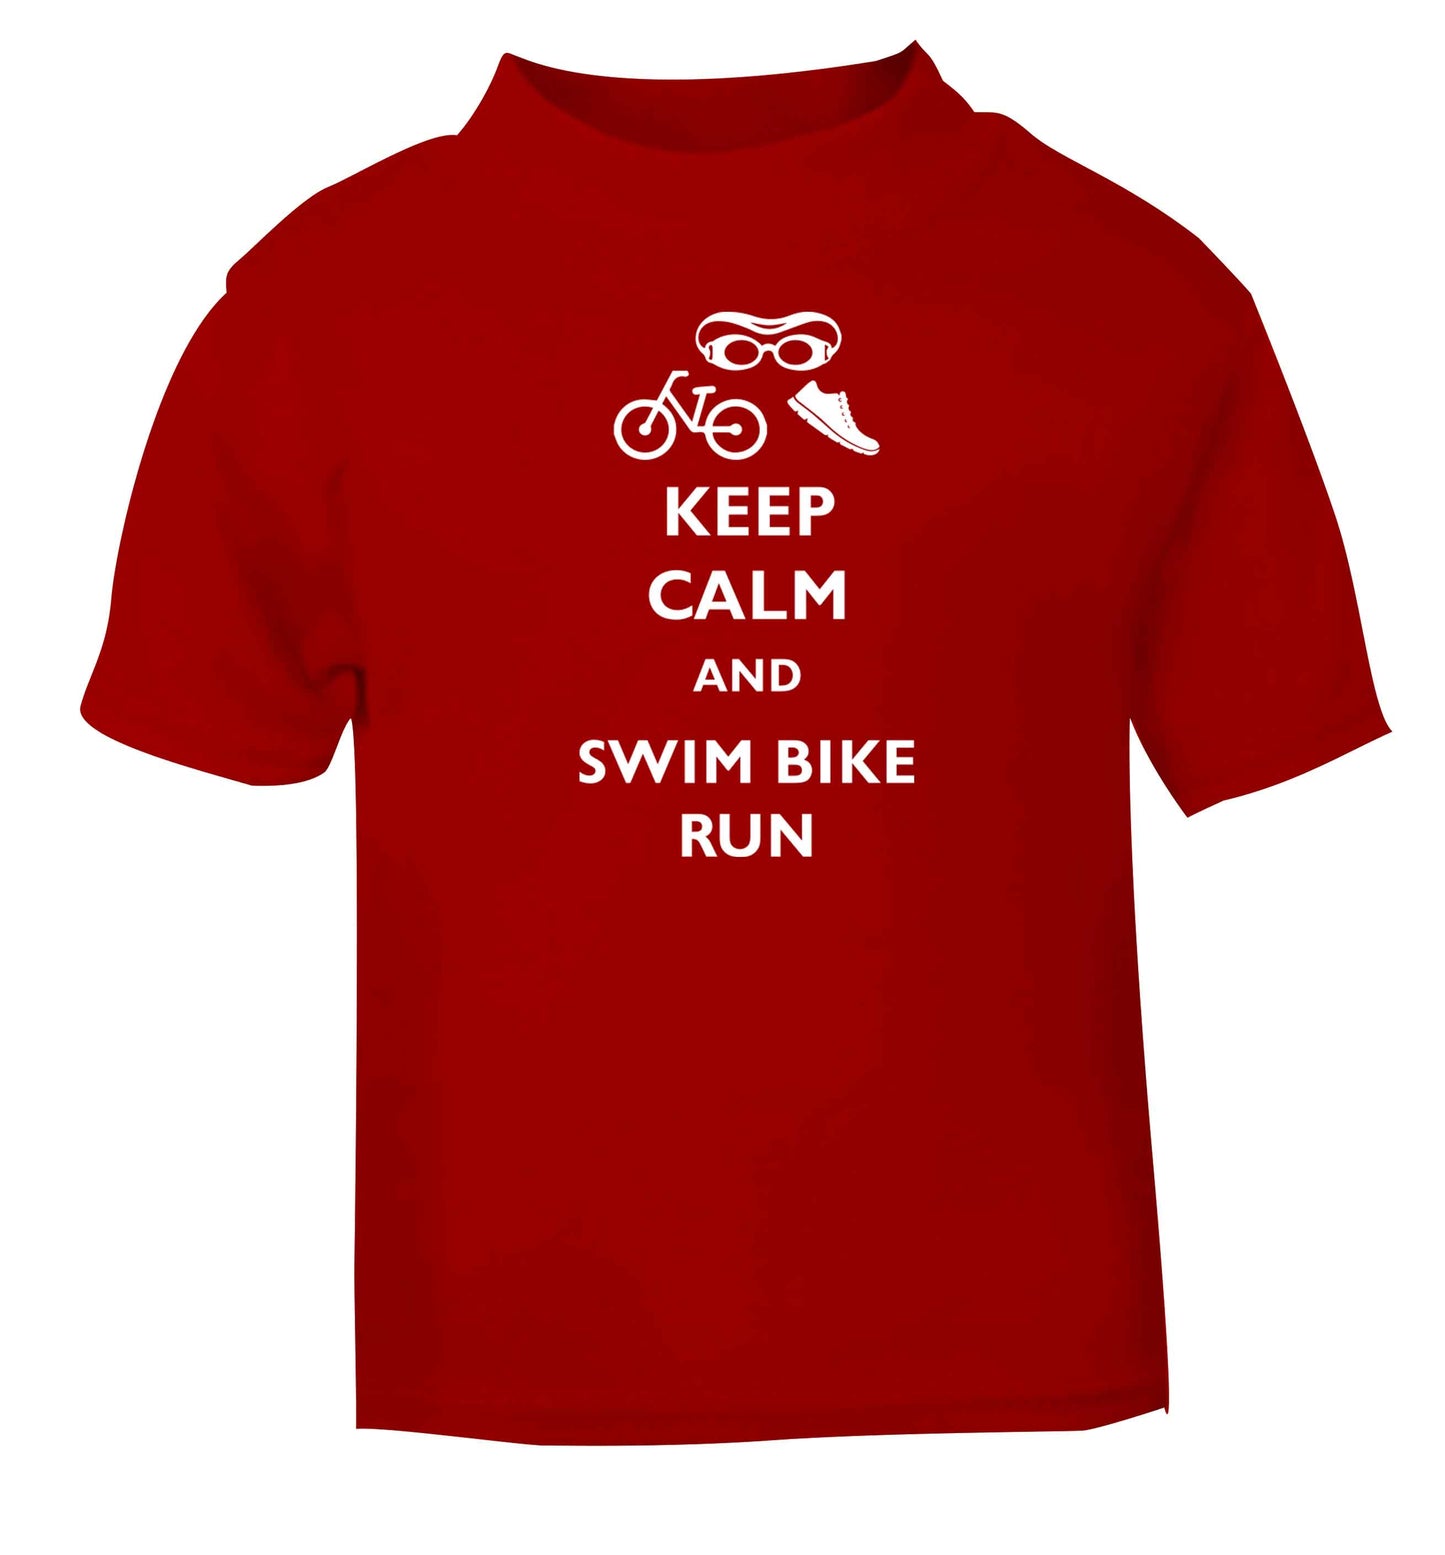 Keep calm and swim bike run red baby toddler Tshirt 2 Years